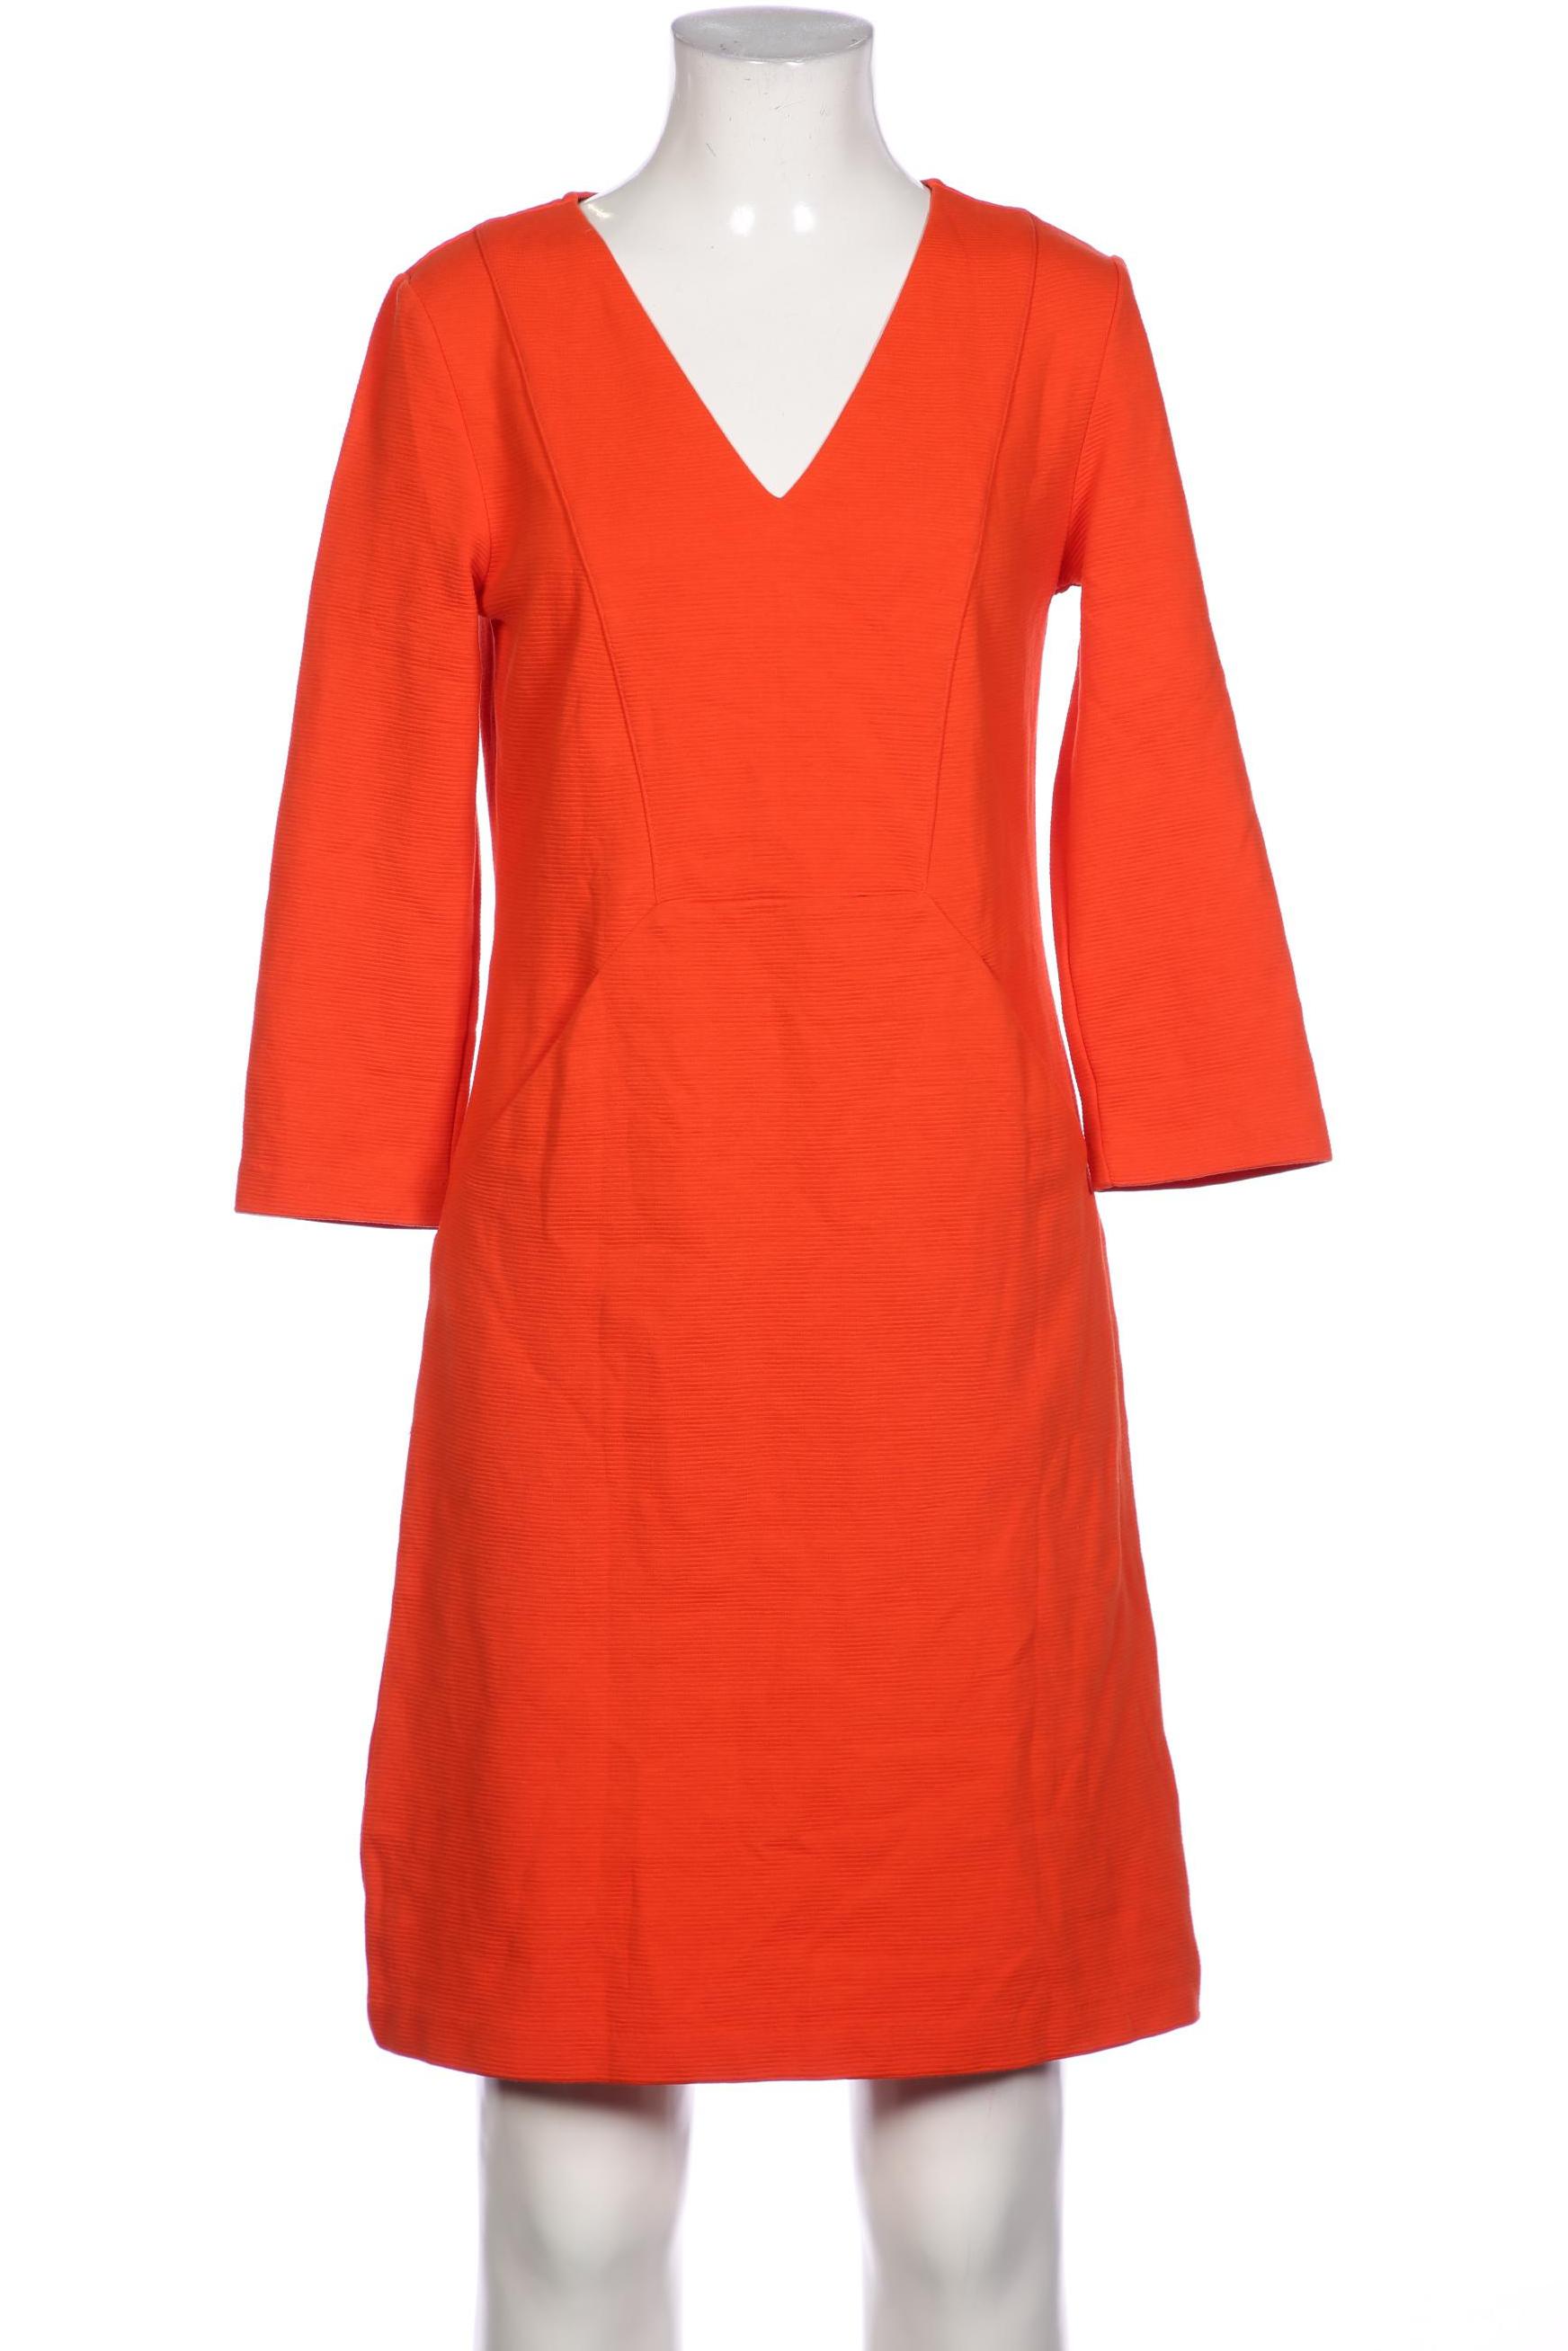 Boden Damen Kleid, orange von Boden